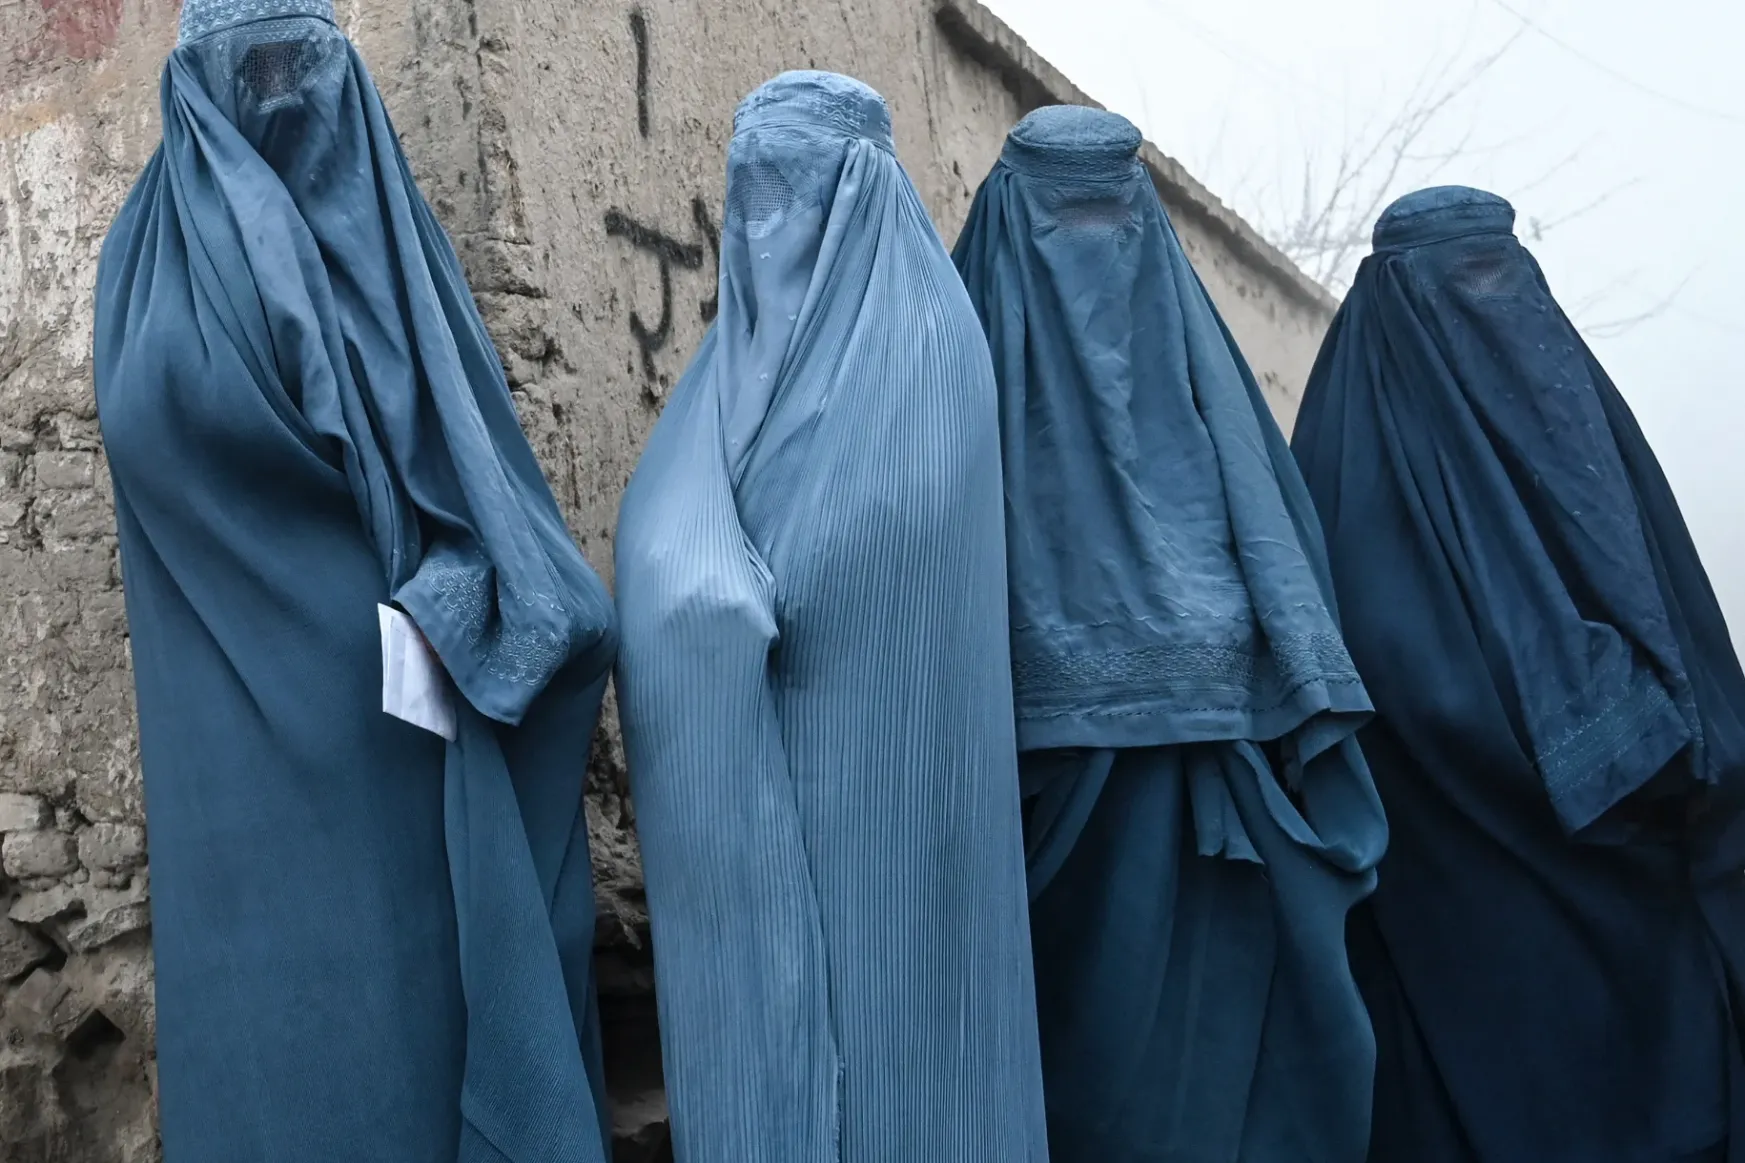 Teljes testet elfedő burka viselését vezették be Afganisztánban a nyilvános helyeken